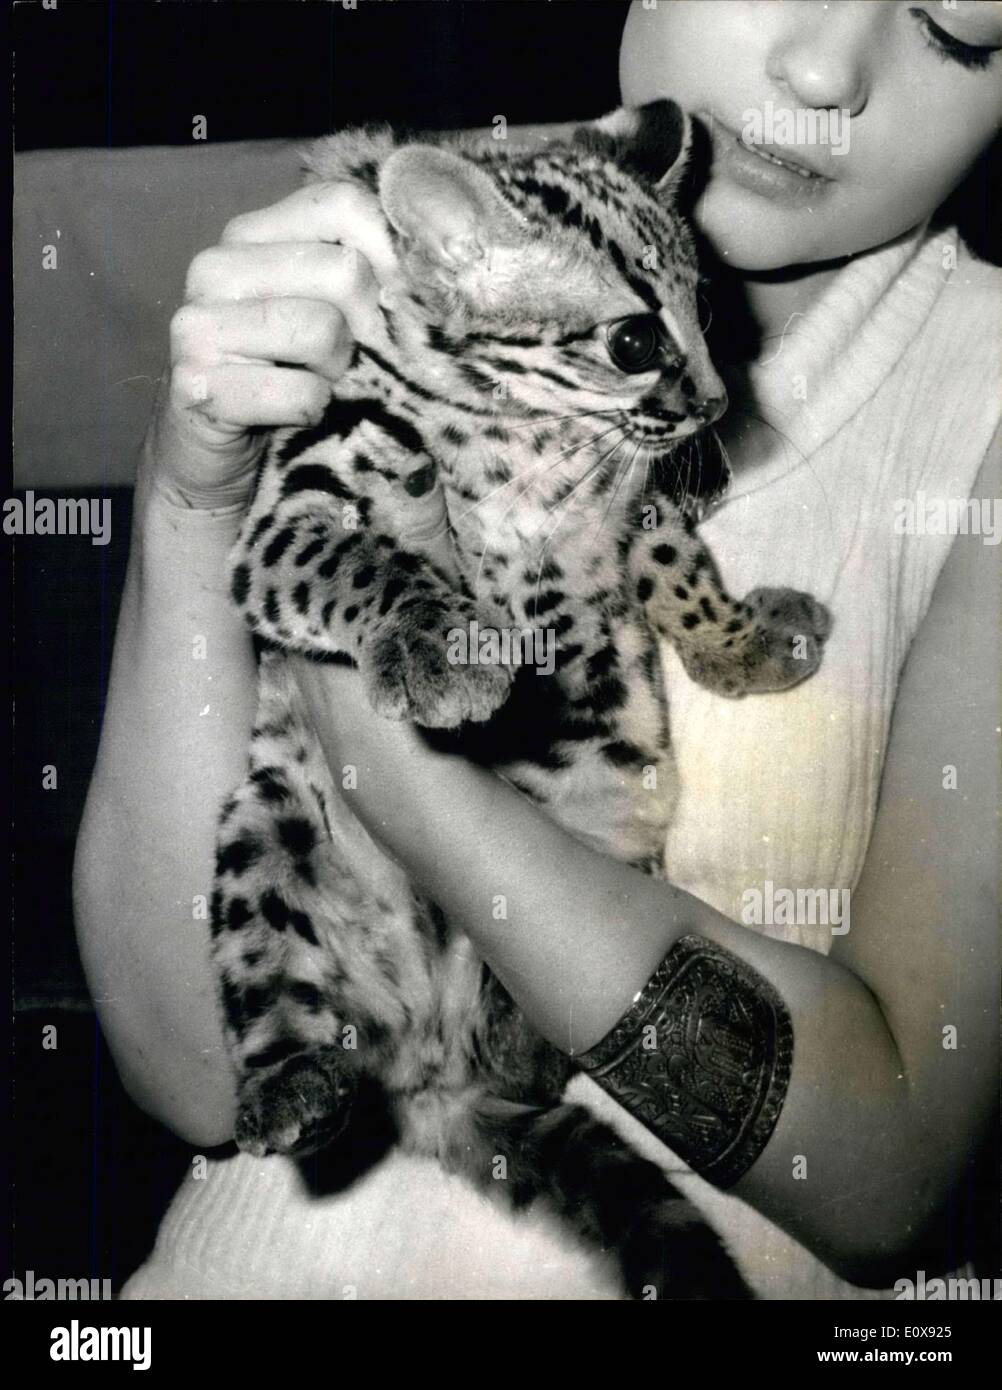 19 novembre 1965 - ''Snow Panther'' à l'exposition : l'exposition annuelle ouverte à la salle Wagram, Paris, aujourd'hui. La photo montre l'une des attractions du Salon, un chat brésilien connu sous le nom de ''Snow Panther' Banque D'Images